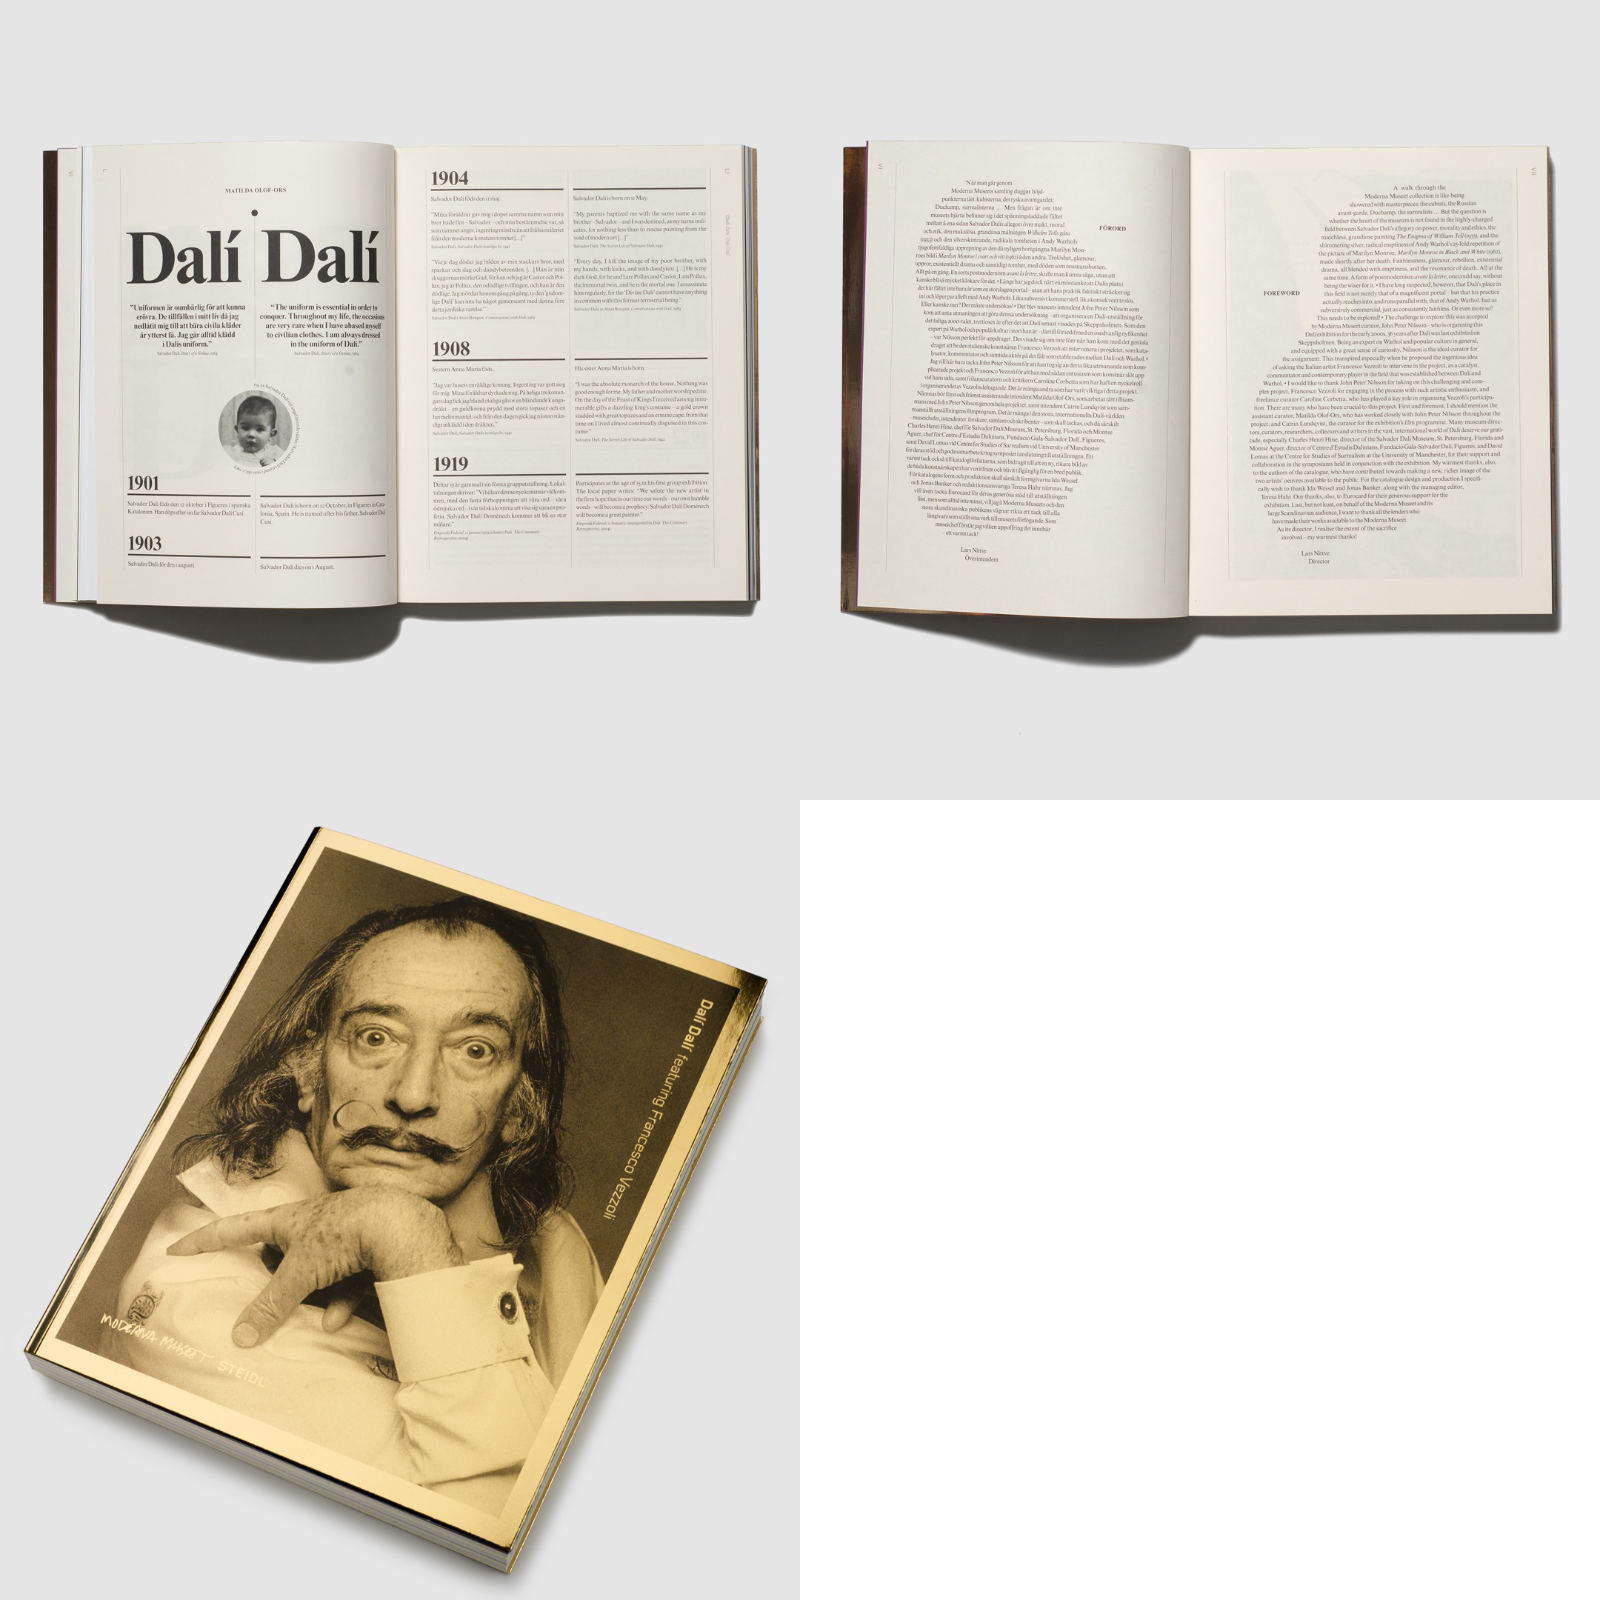 Katalog för Moderna Museets utställning "Dalí featuring Francesco Vezzoli" (2009). Banker-Wessel berättar att de ville skapa ett något dekadent uttryck med guld och svart i omslaget, och en inlaga på ömsom obestruket och bestruket papper. Foto: Banker-Wessel.